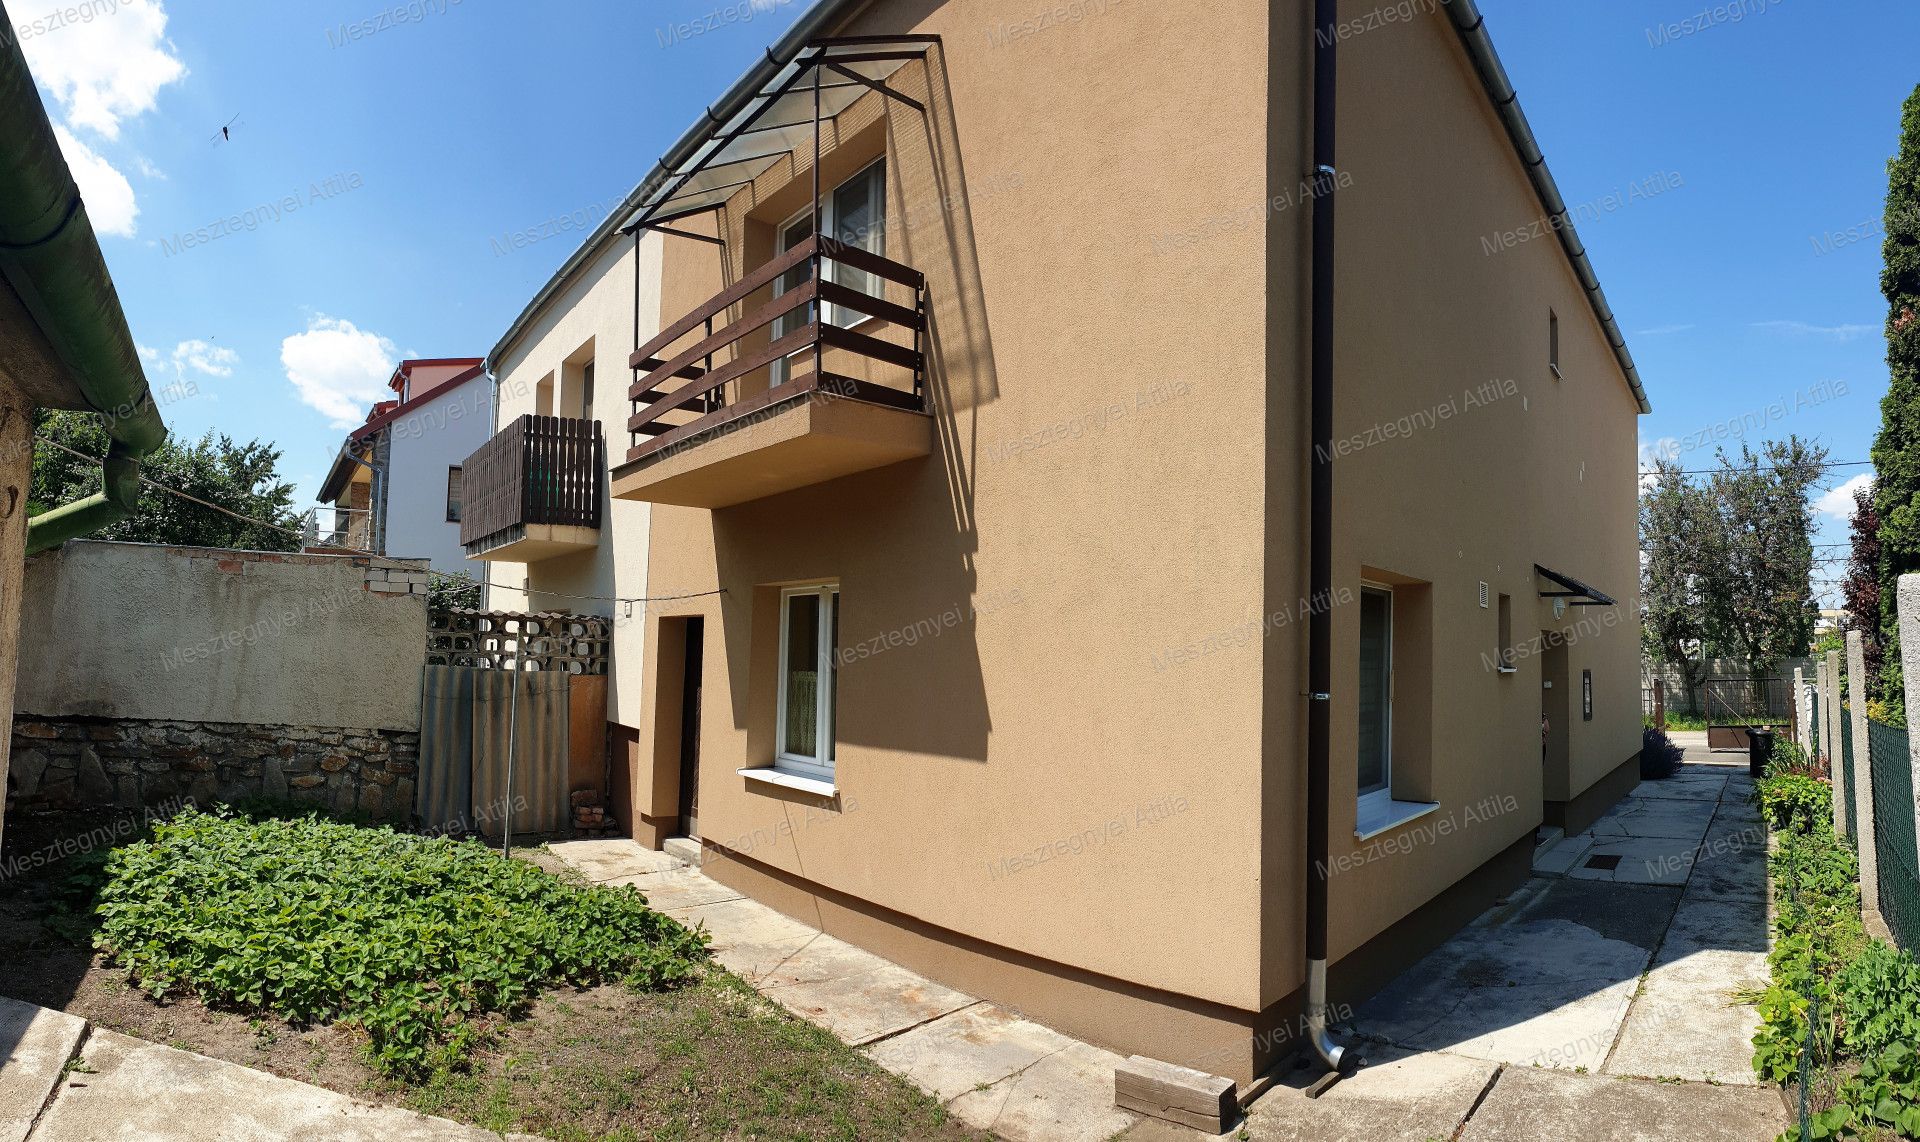 Eladó  Családi ház Sopron  64 900 000 , # 2450